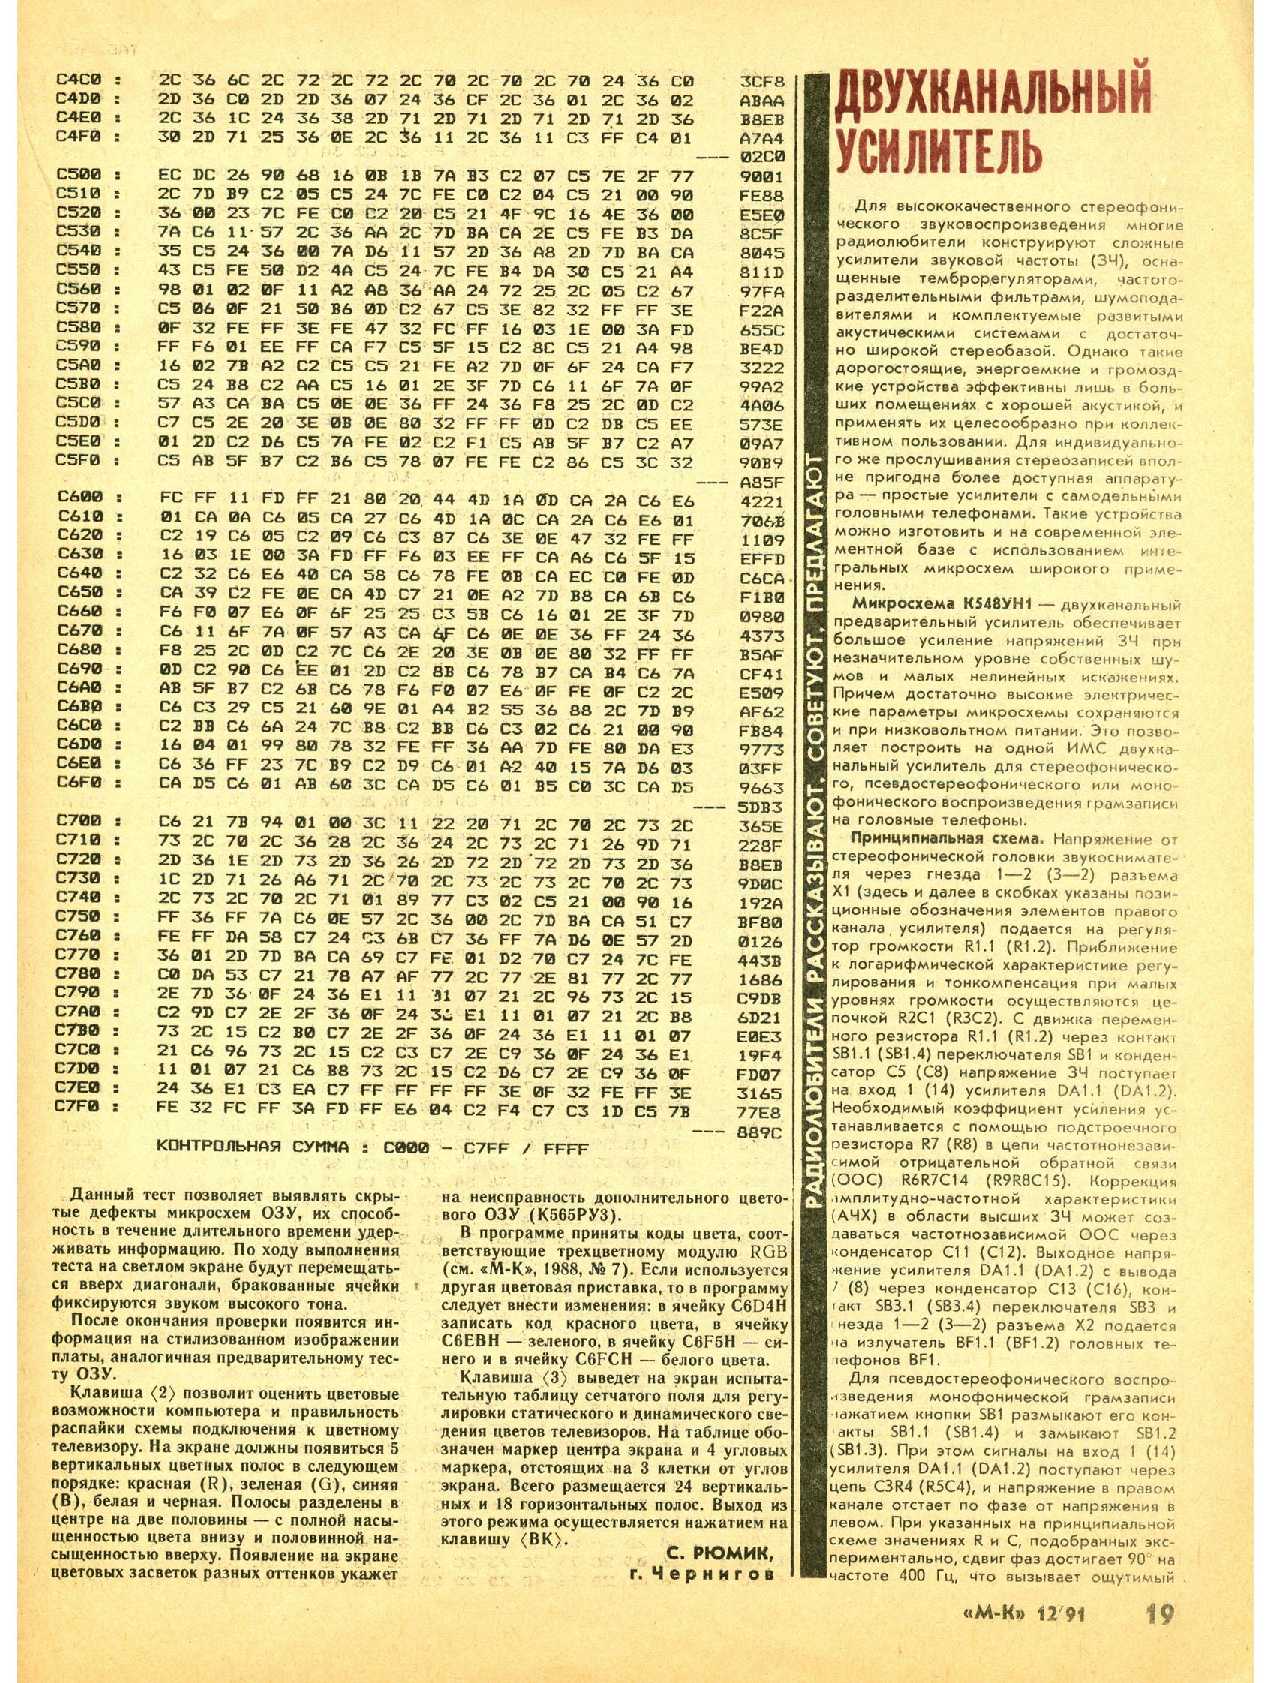 МК 12, 1991, 19 c.